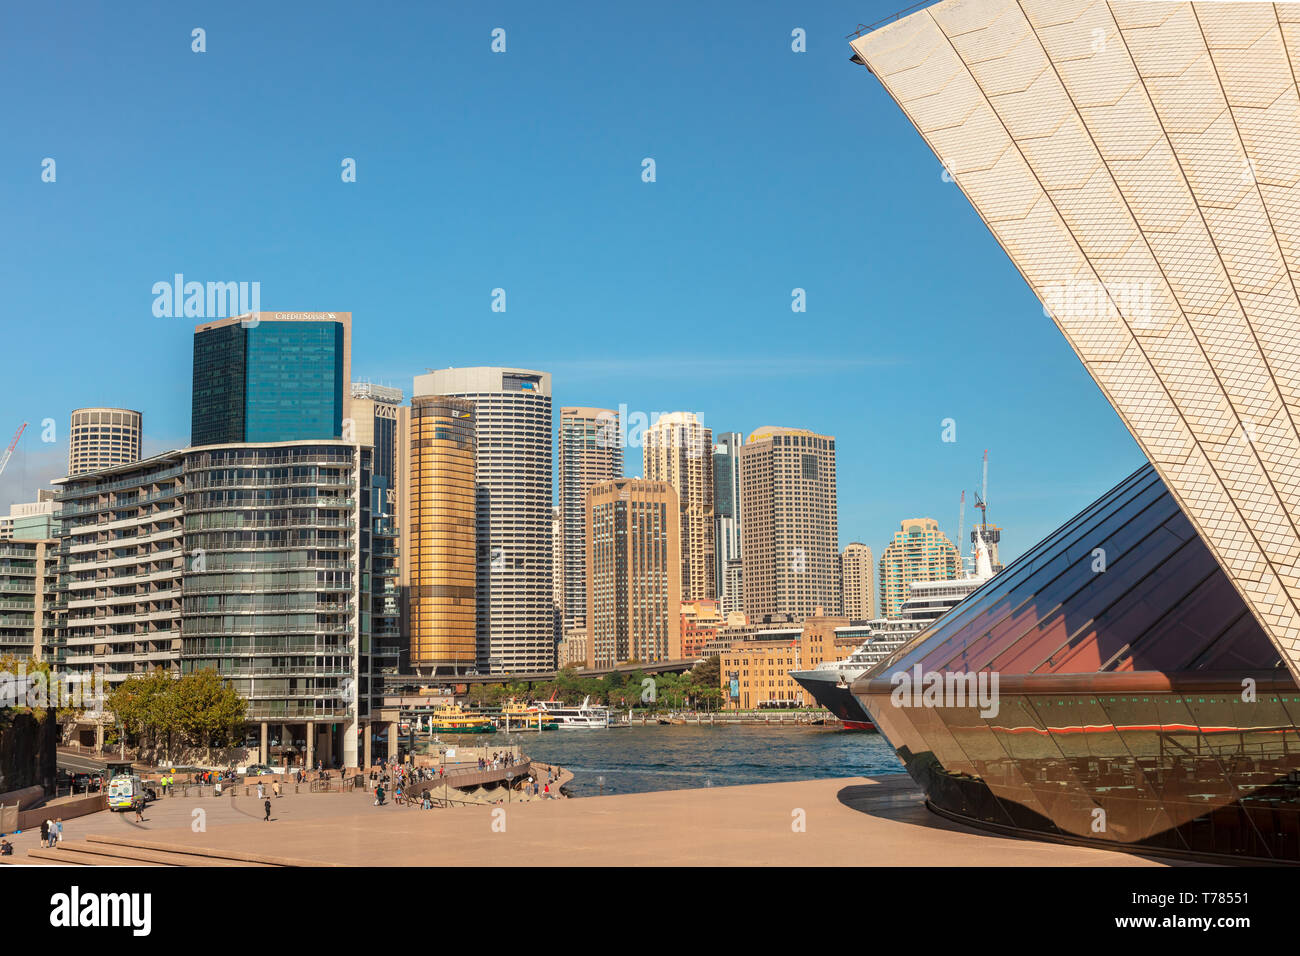 La Sydney central business district, il principale centro commerciale di Sydney, vista dal Circular Quay. Foto Stock